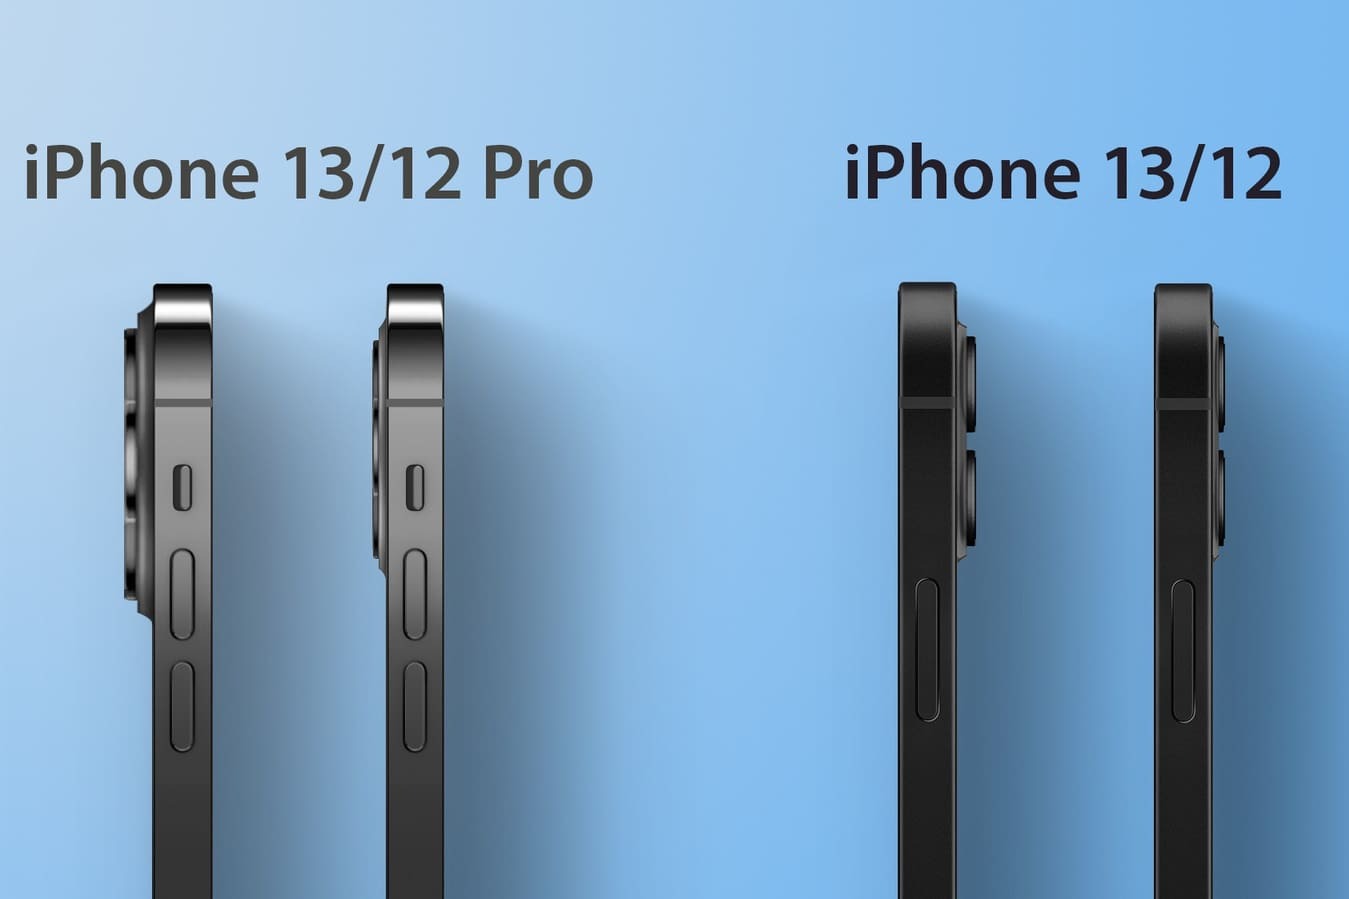 Чертежи показали, что корпус и камеры iPhone 13 станут толще